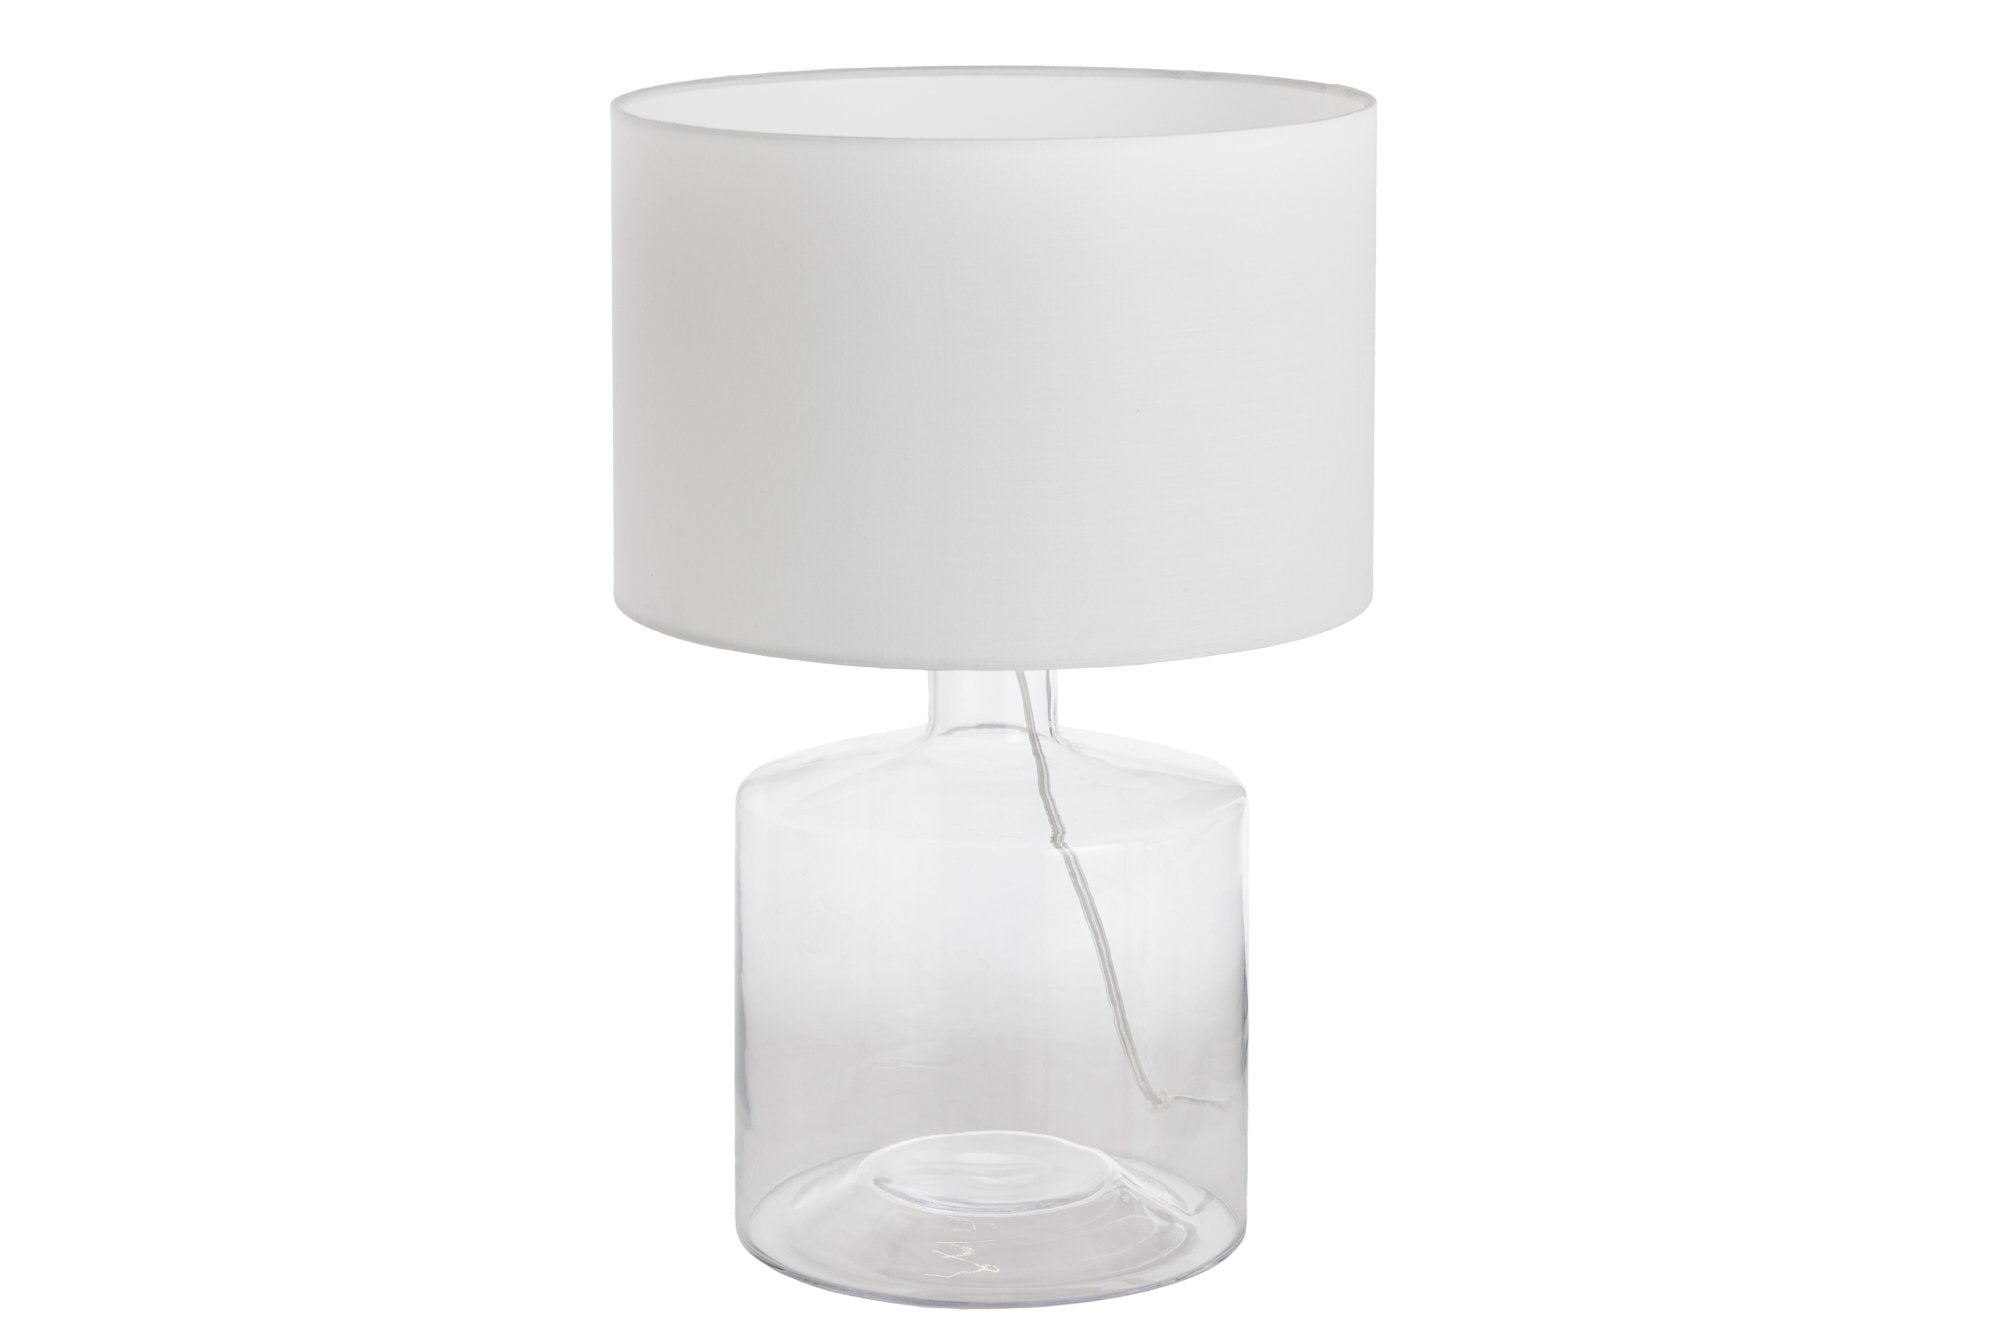 Invicta classic ii újrahasznosított üveg asztali lámpa